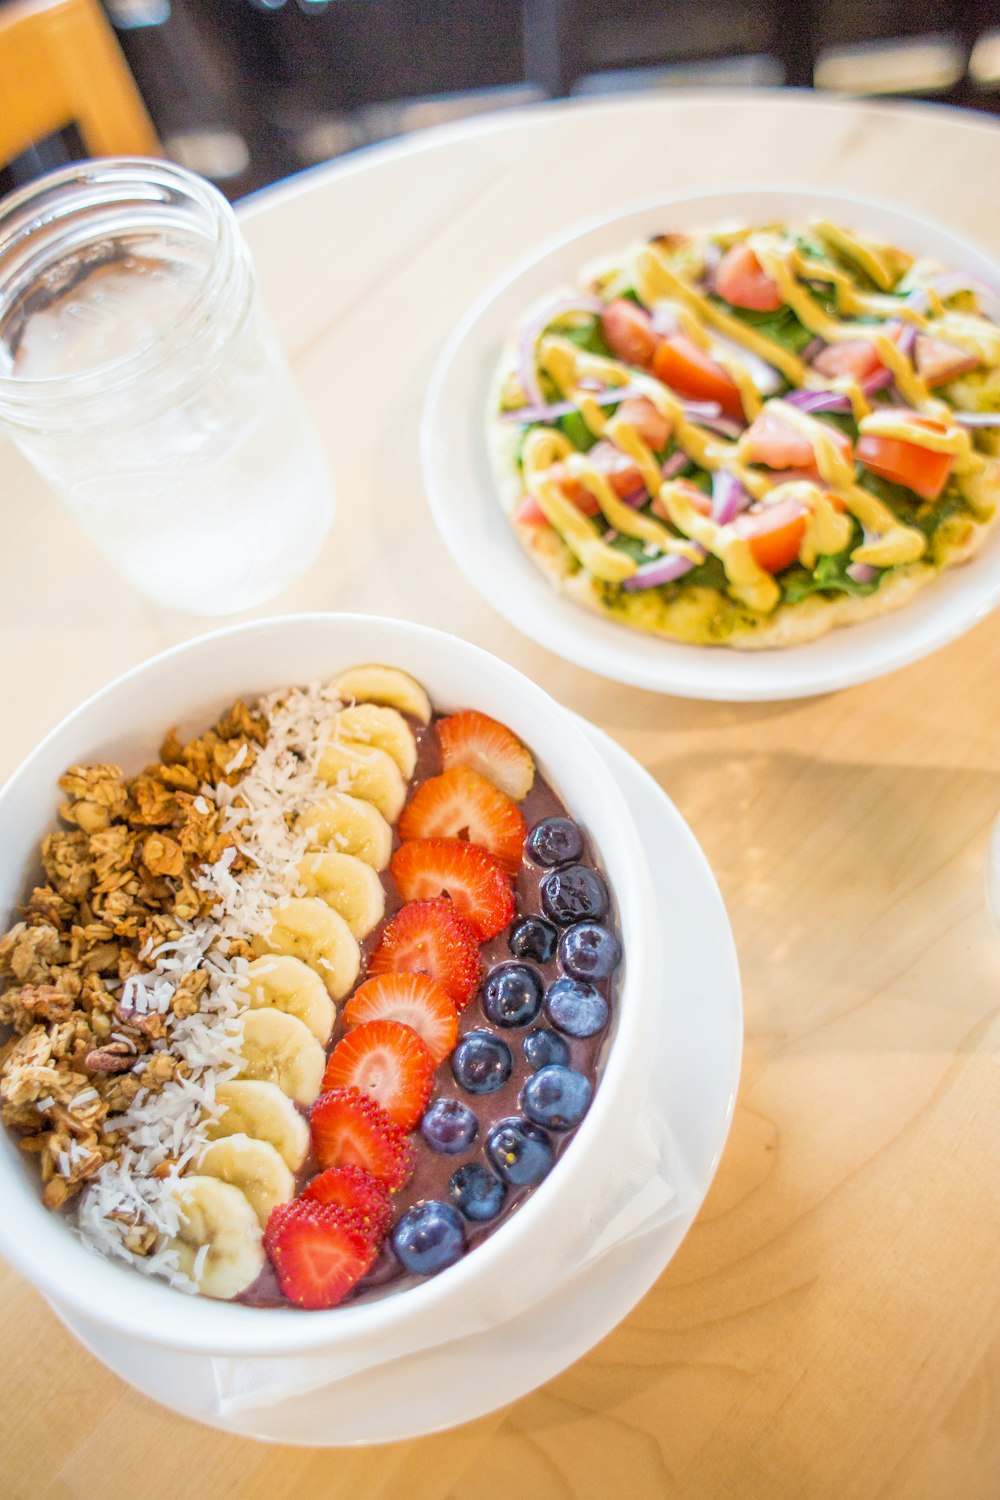 Trancher la banane, la fraise et les bleuets dans un bol blanc à côté de la salade de légumes sur la table